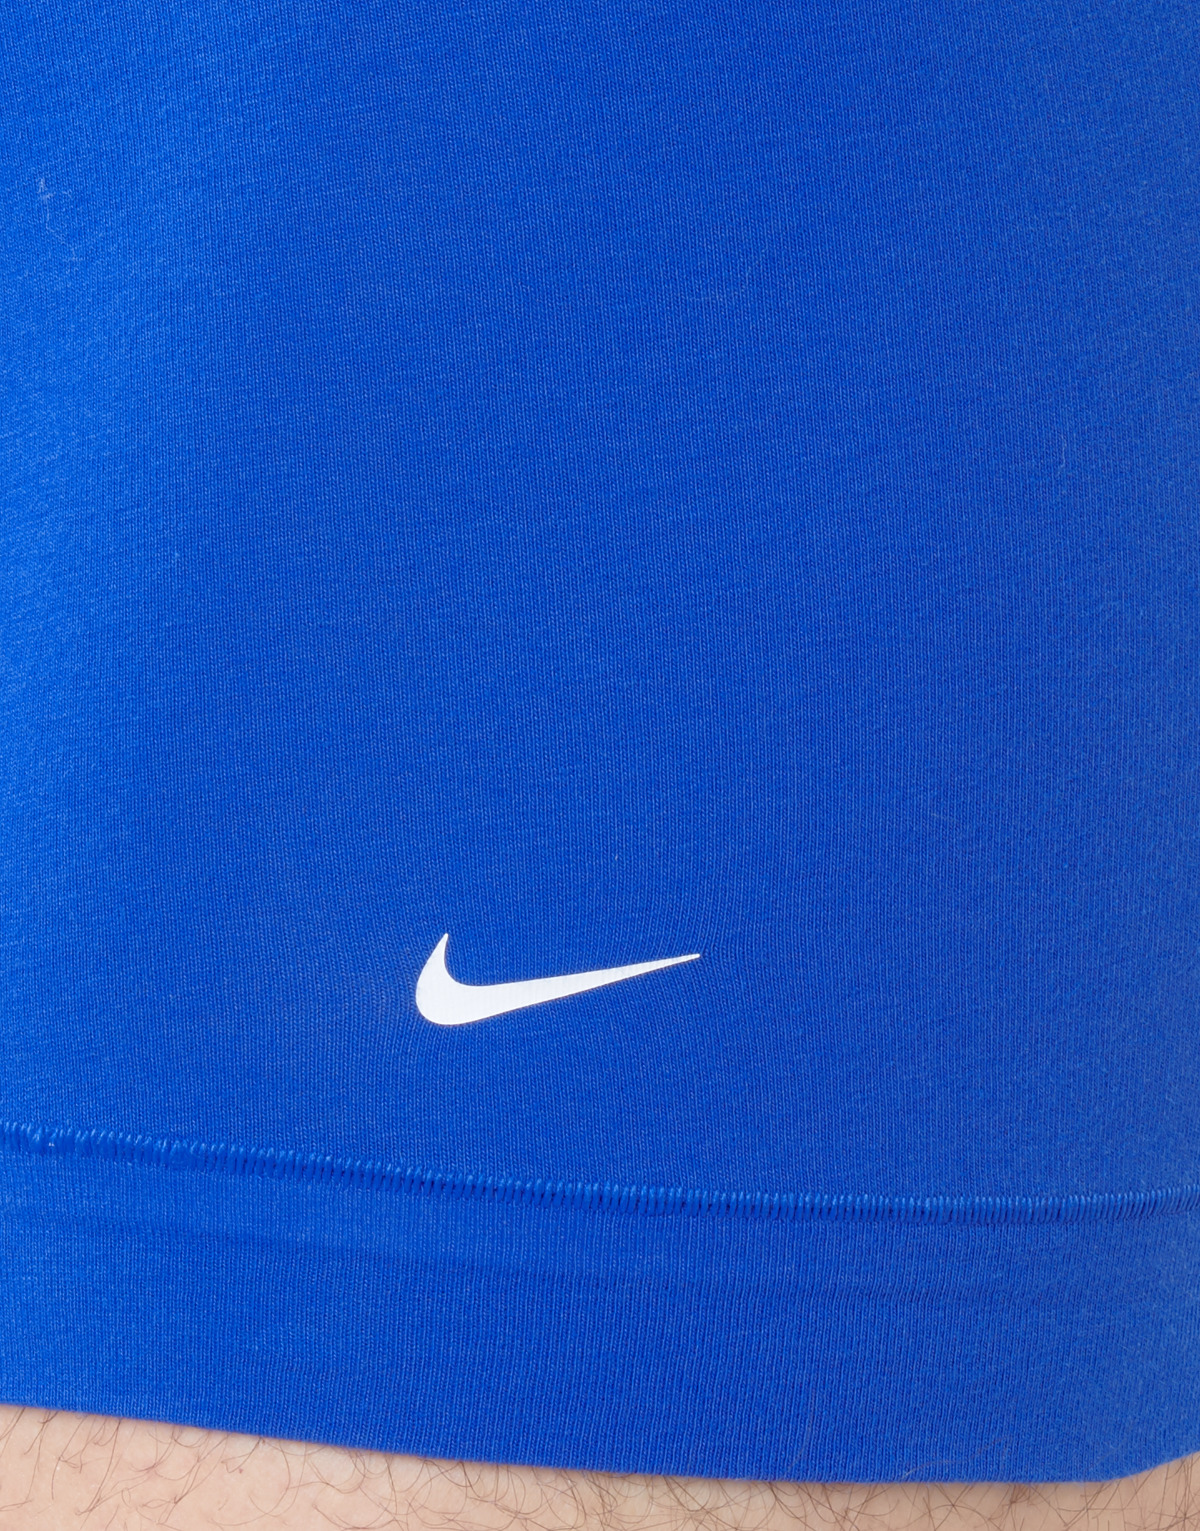 Nike Noir / Marine / Bleu EVERYDAY COTTON STRETCH X3 bYOViKVV